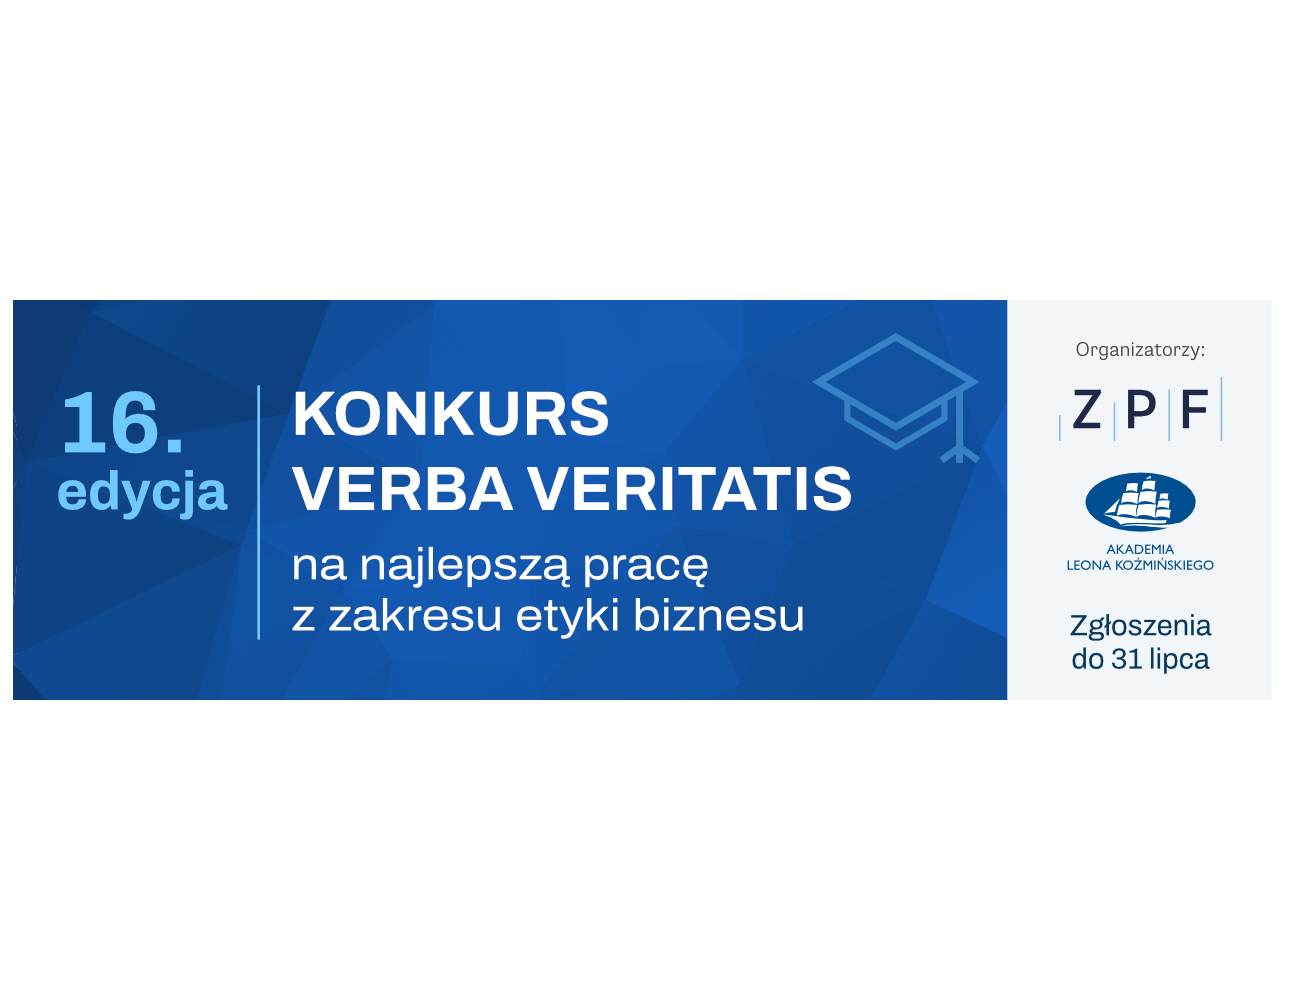 Związek Przedsiębiorstw Finansowych w Polsce oraz Akademia Leona Koźmińskiego zaprasza do udziału w Konkursie